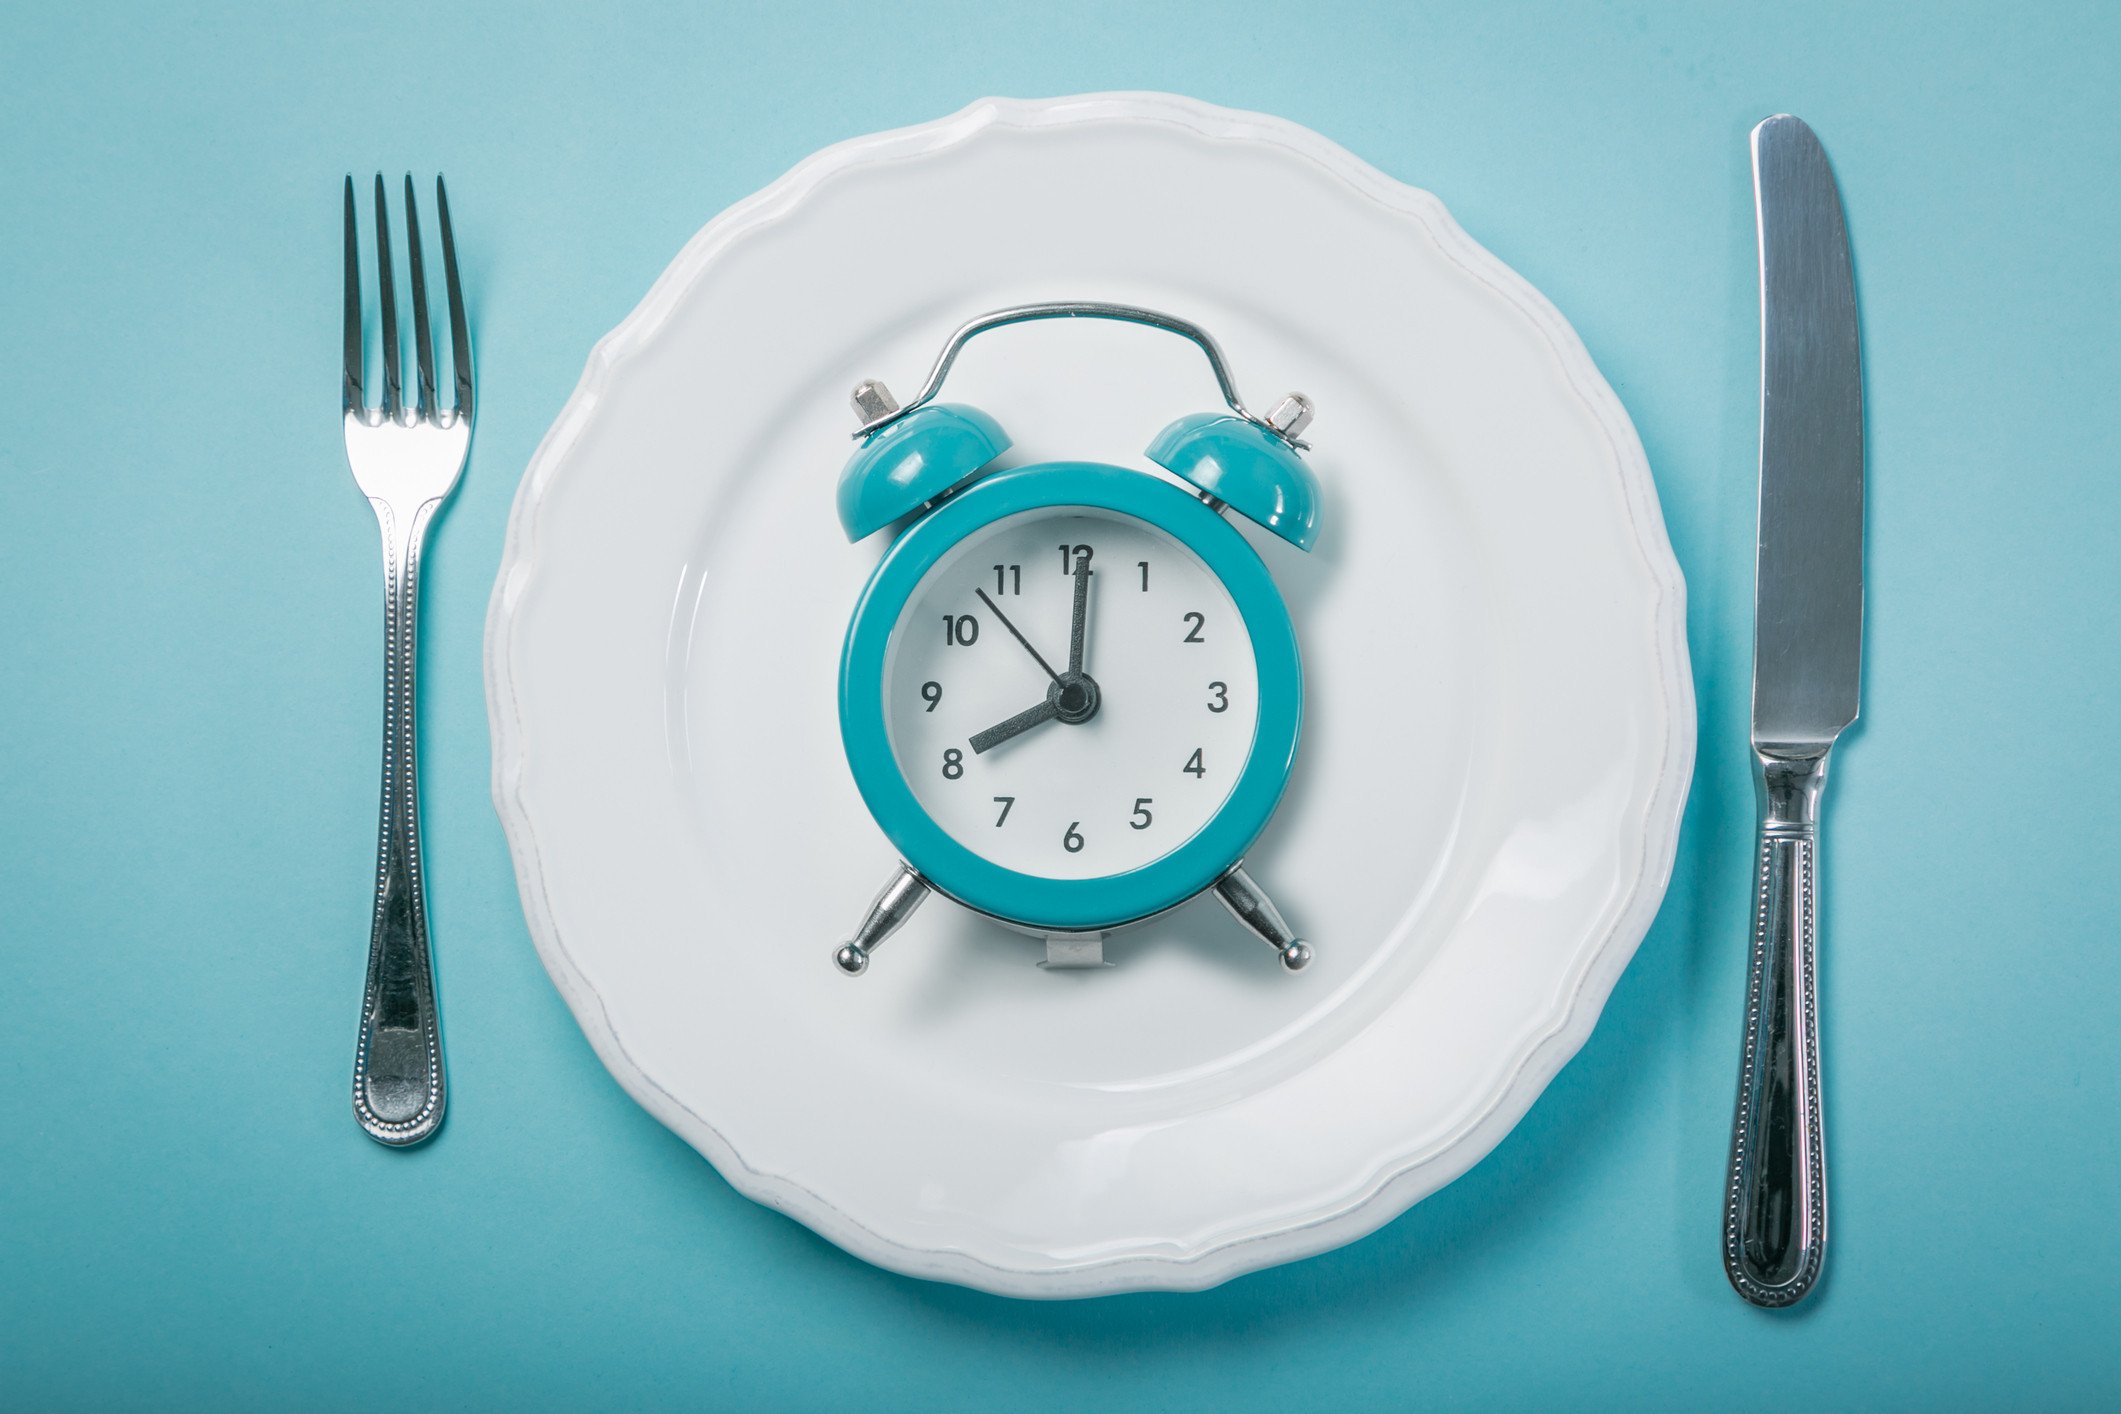  Câte ore de fasting sunt necesare pentru a îmbunătăţi foamea, starea de spirit şi somnul?